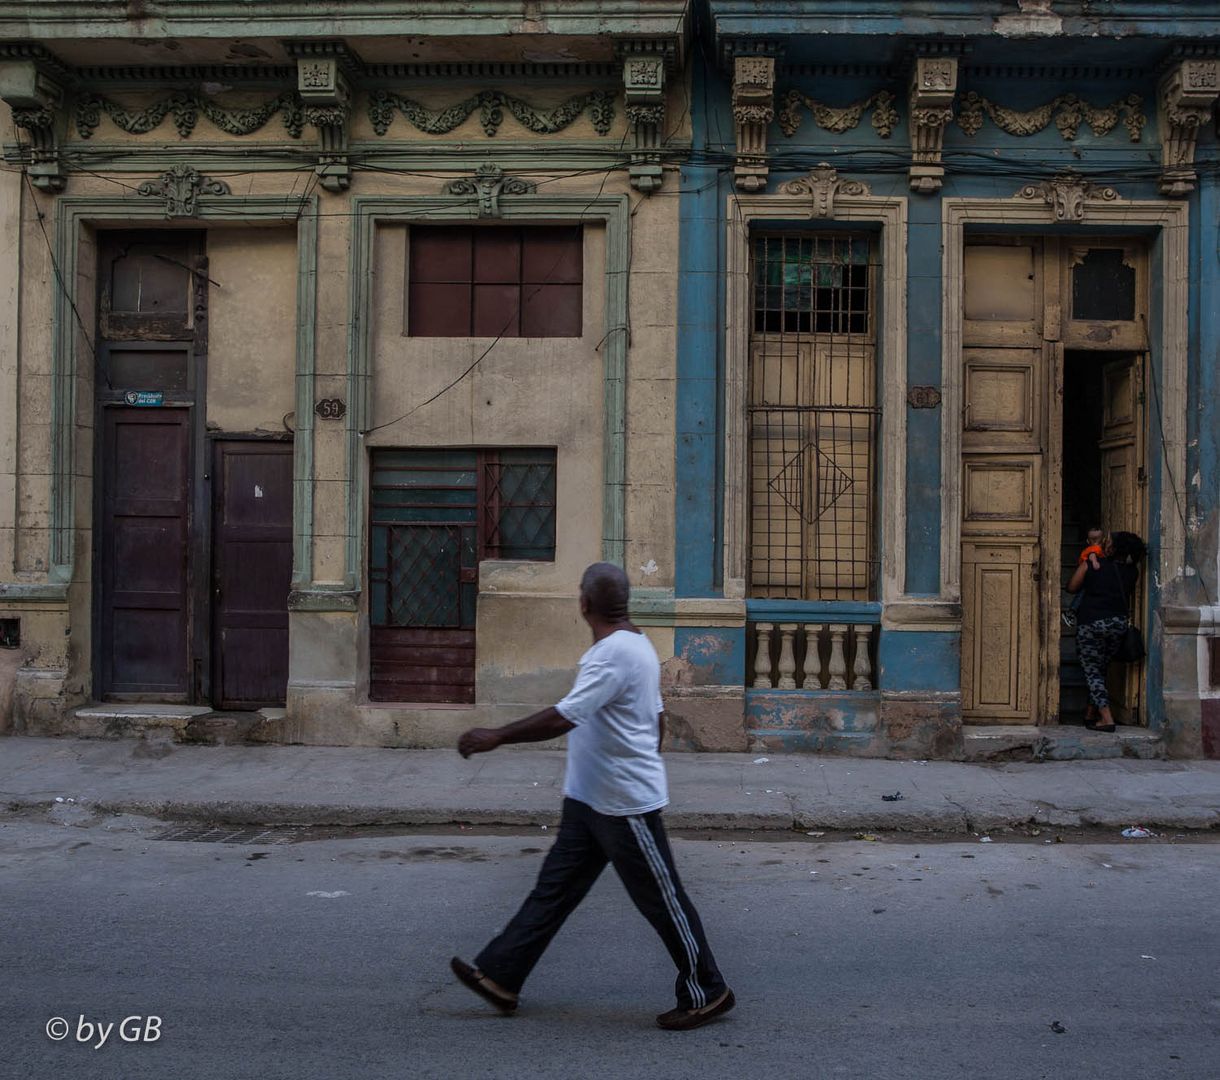 Eine Straßenszene in Havanna